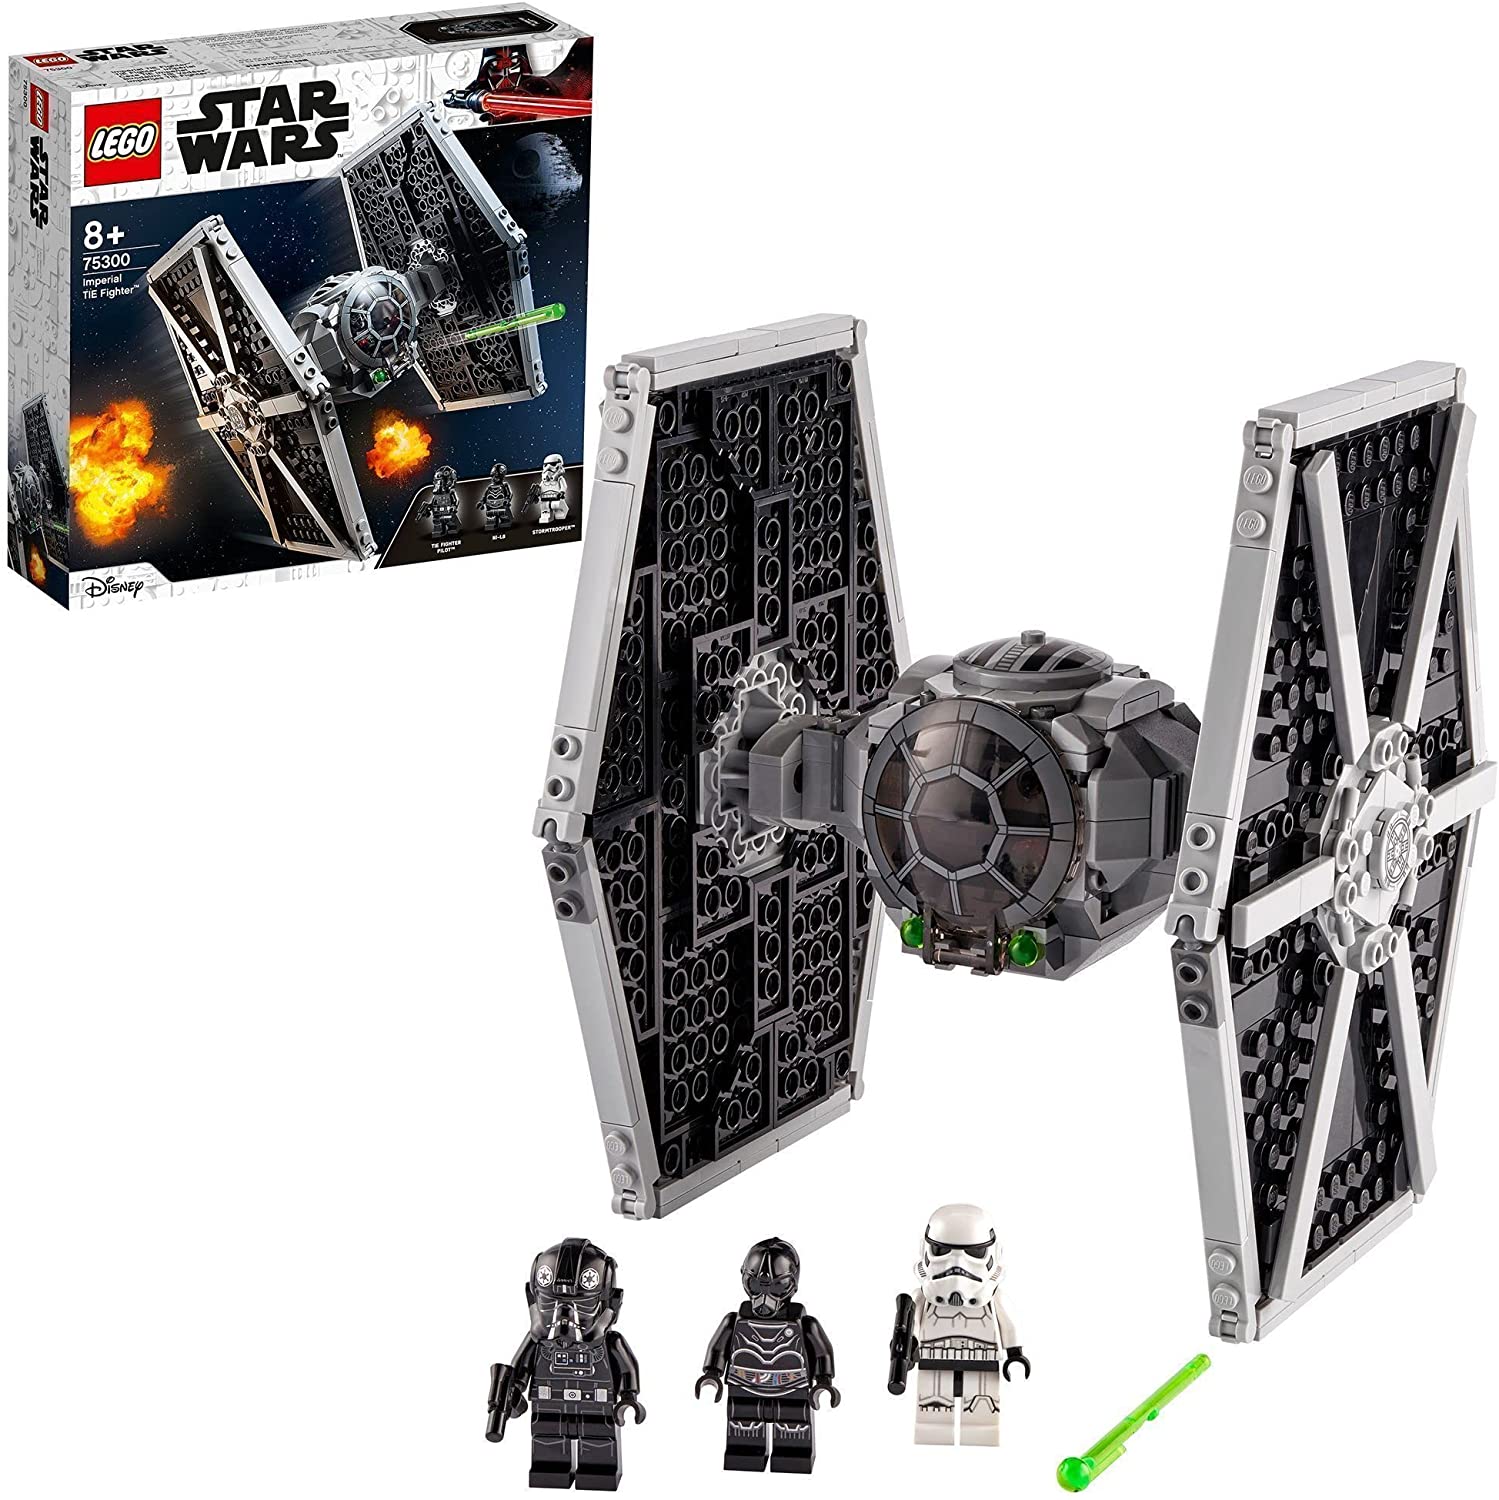  LEGO 75300 Star Wars Imperial TIE Fighter Spielzeug mit Sturmtruppler und Piloten als Minifiguren aus der Skywalker Saga